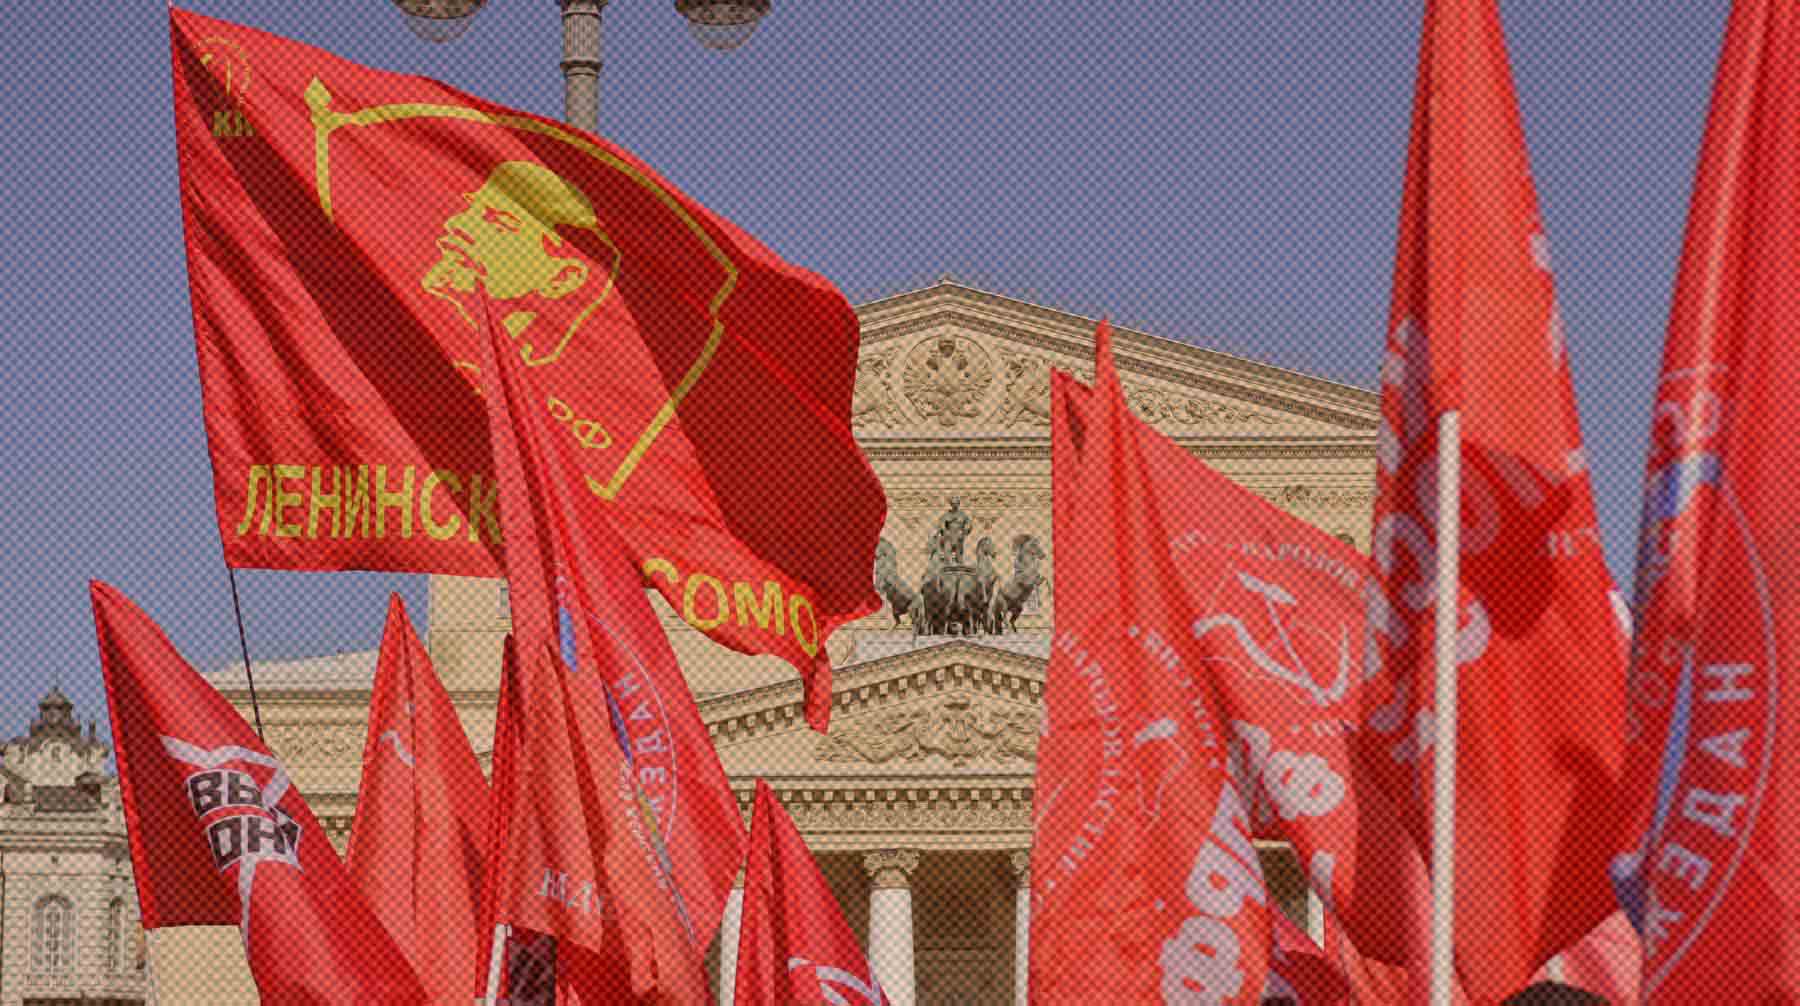 Dailystorm - В ЦК КПРФ прокомментировали итоговую выборку депутатов «Умного голосования» Навального